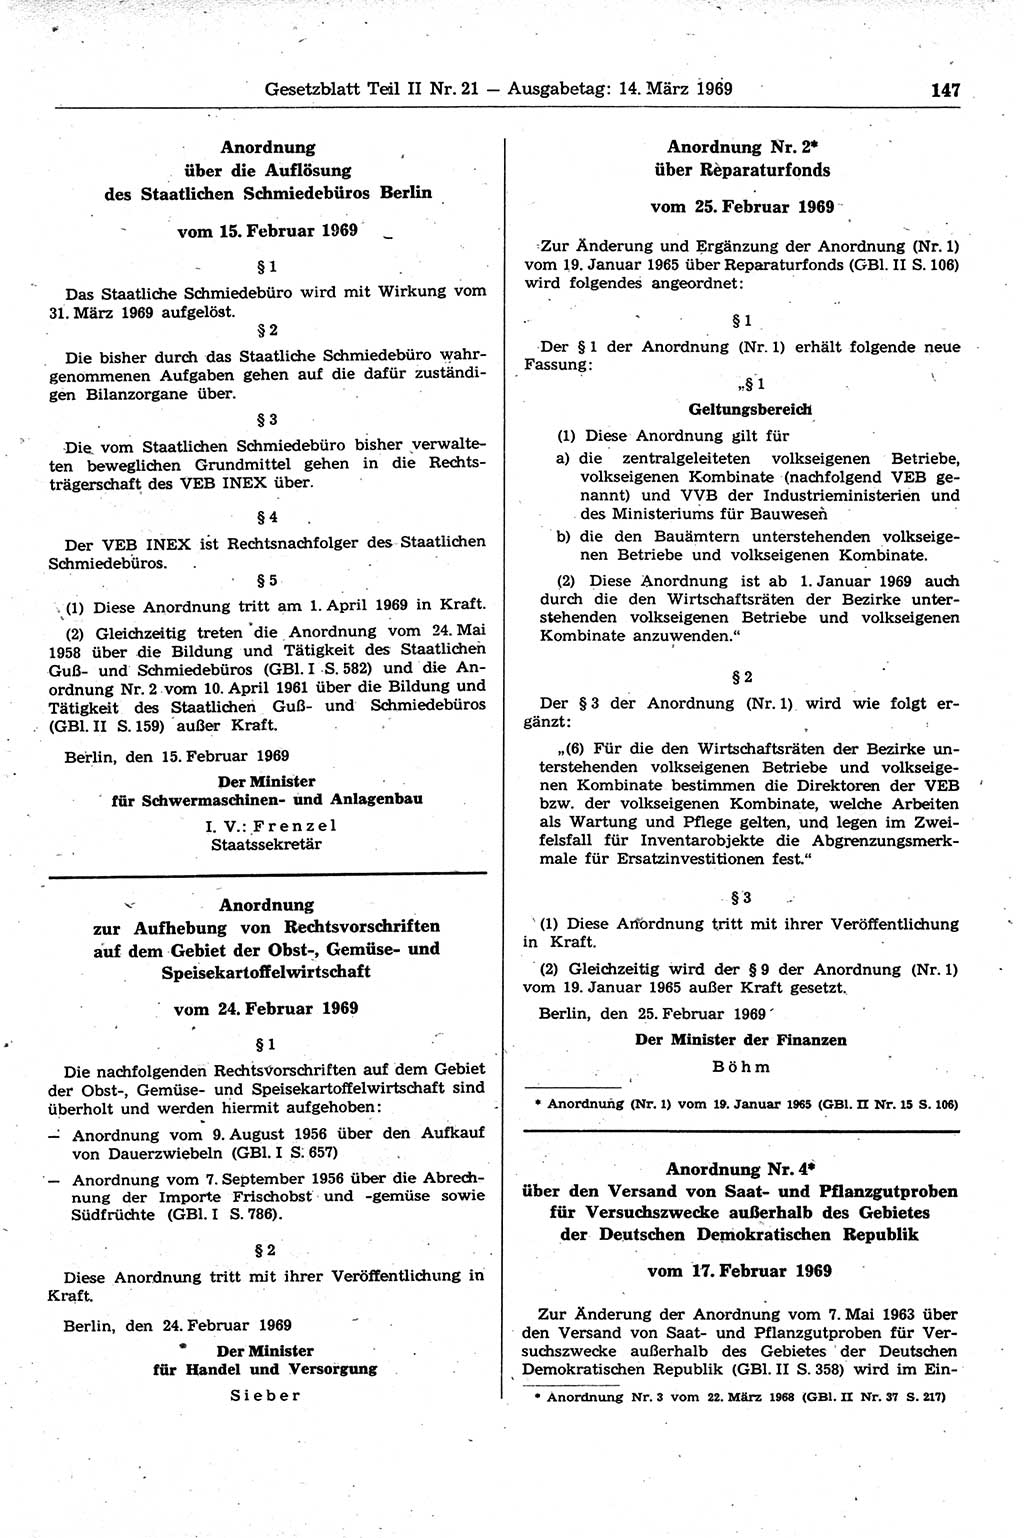 Gesetzblatt (GBl.) der Deutschen Demokratischen Republik (DDR) Teil ⅠⅠ 1969, Seite 147 (GBl. DDR ⅠⅠ 1969, S. 147)